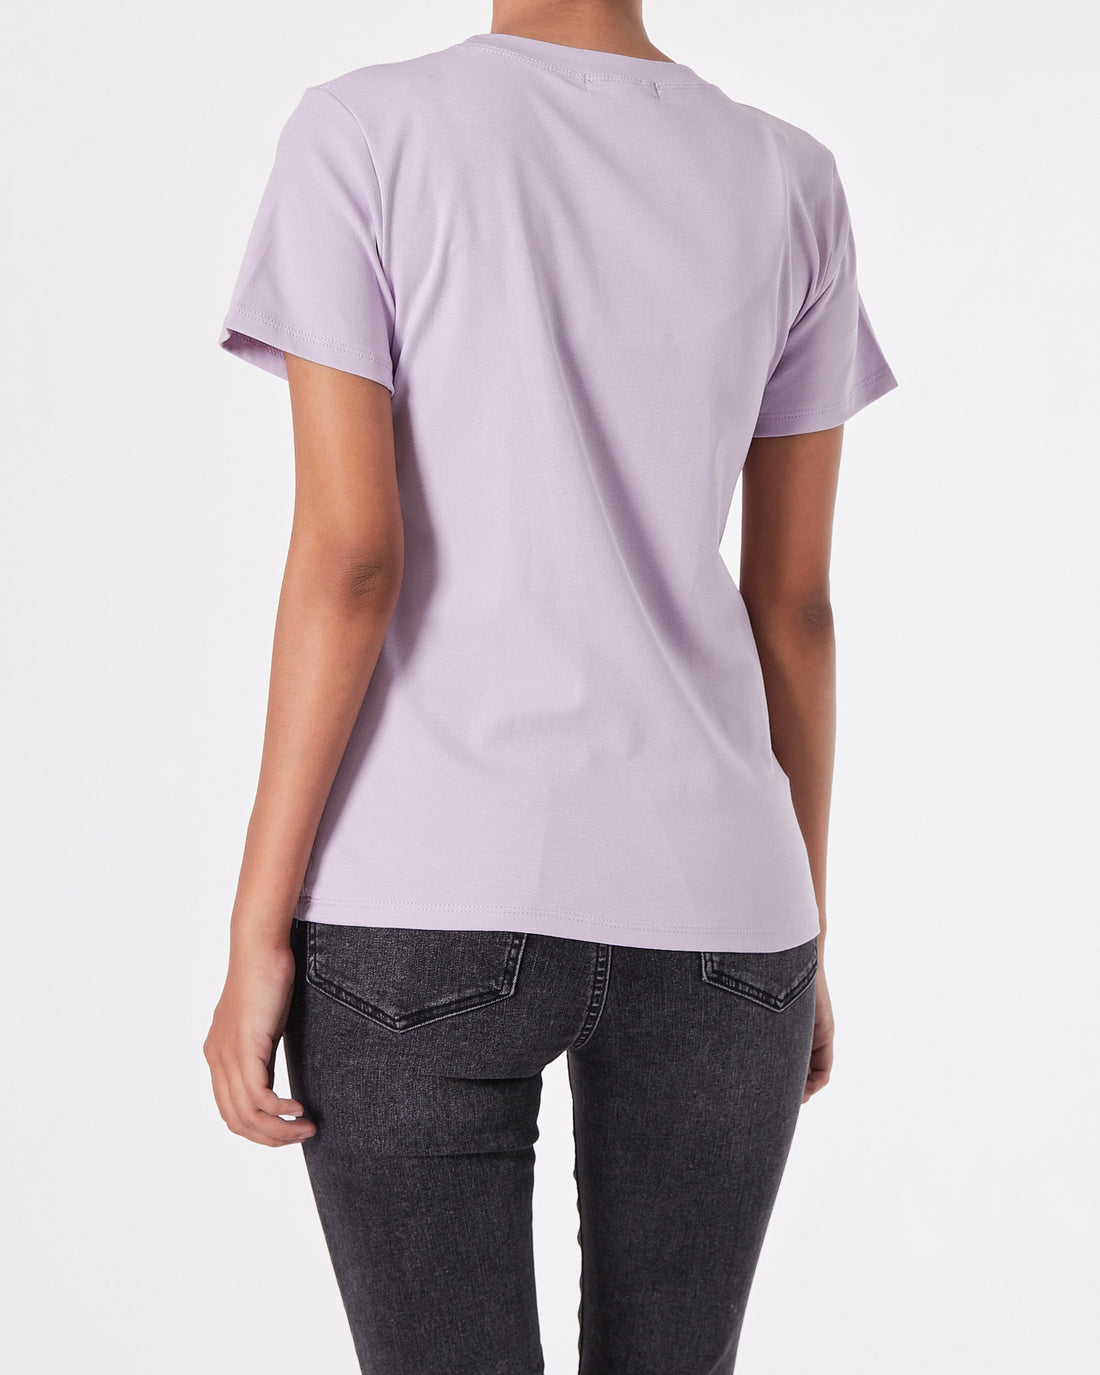 Strong Rhinestone Lady Purple T-Shirt 11.90